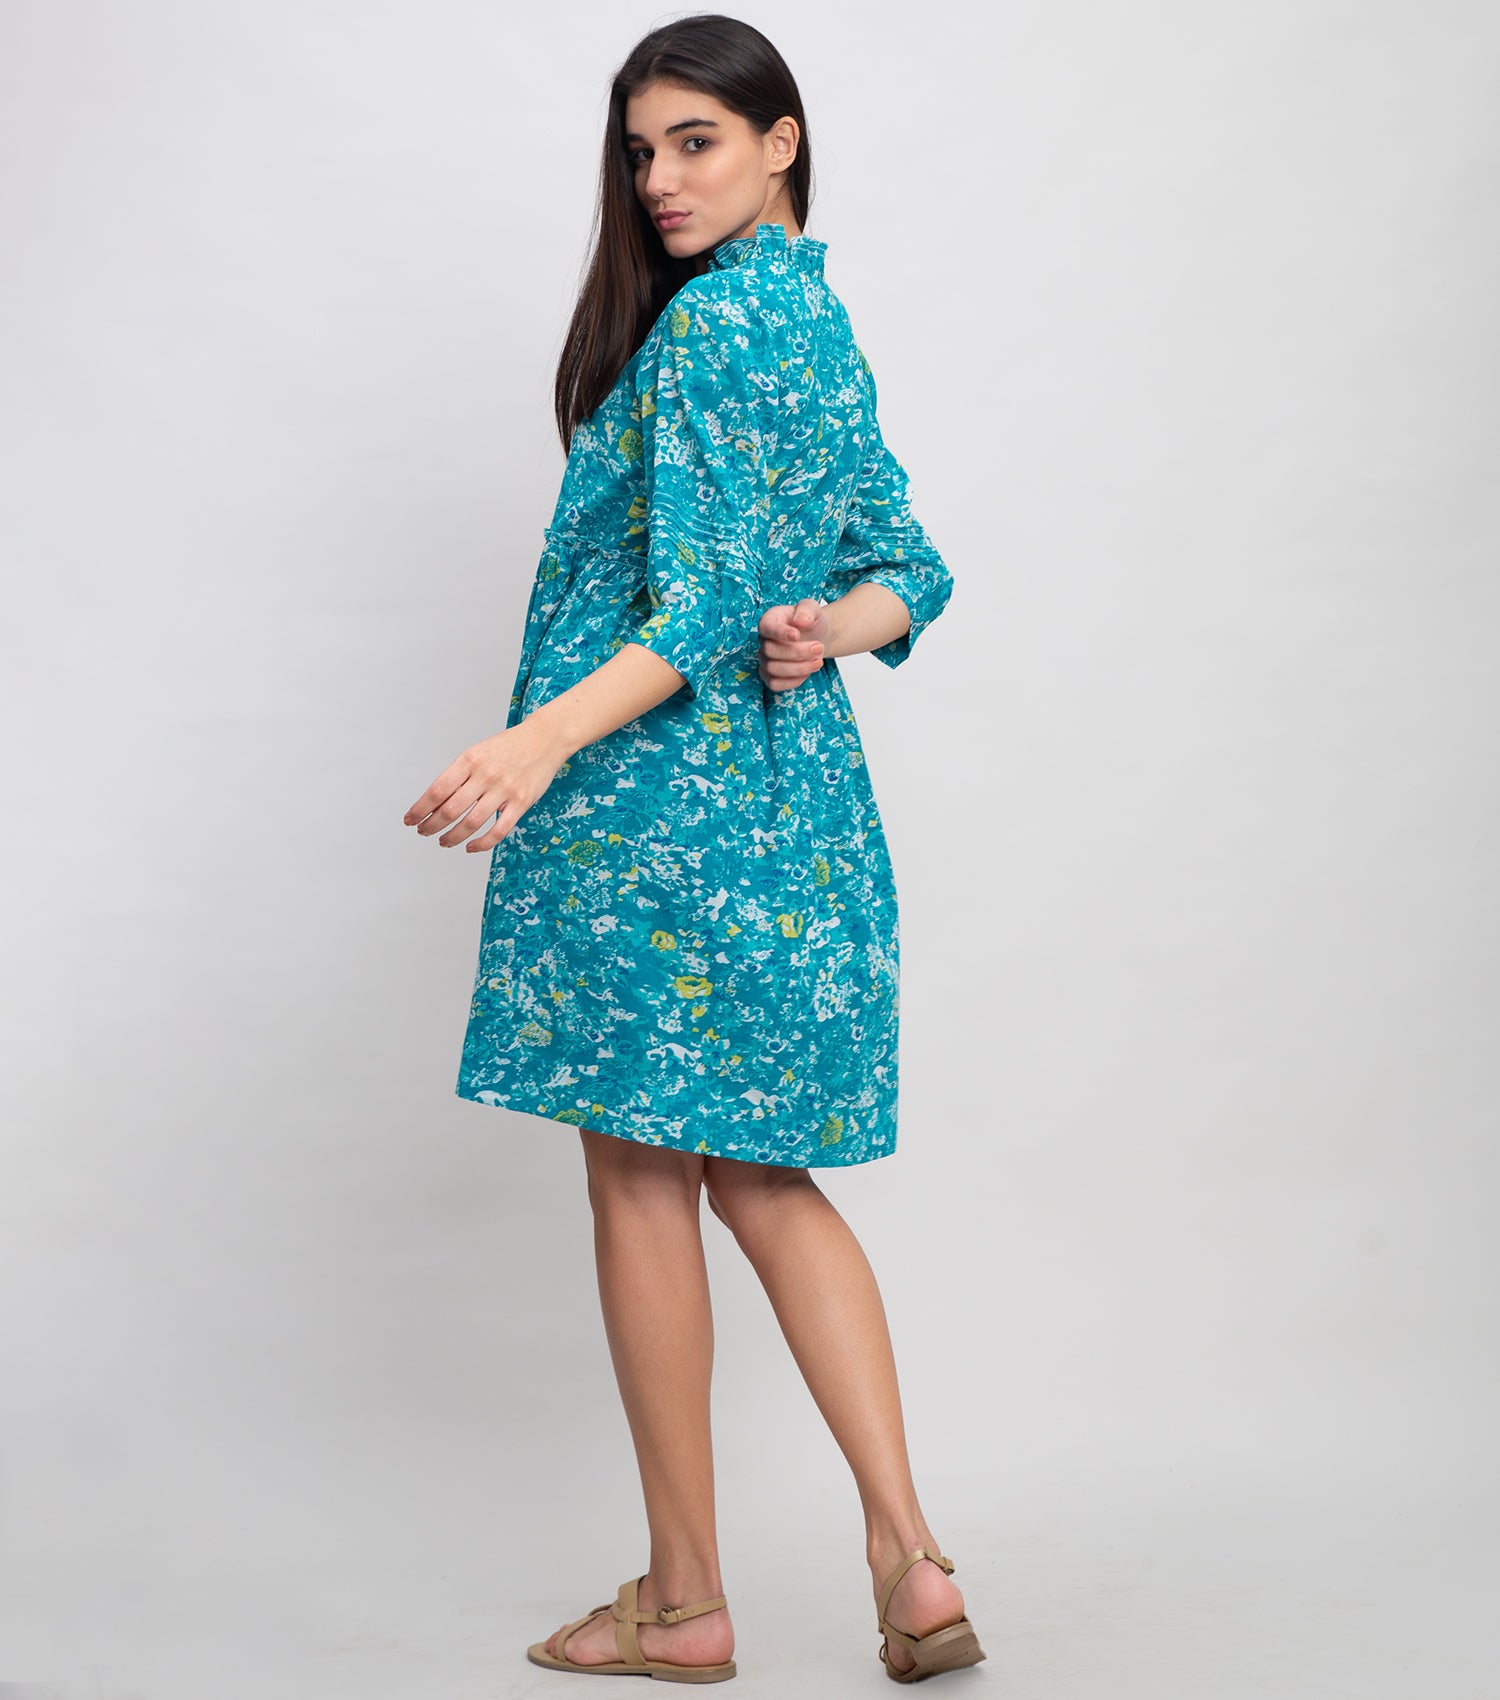 Aqua Blue Cotton Printed Mini Dress with Frill & Pleat Detail